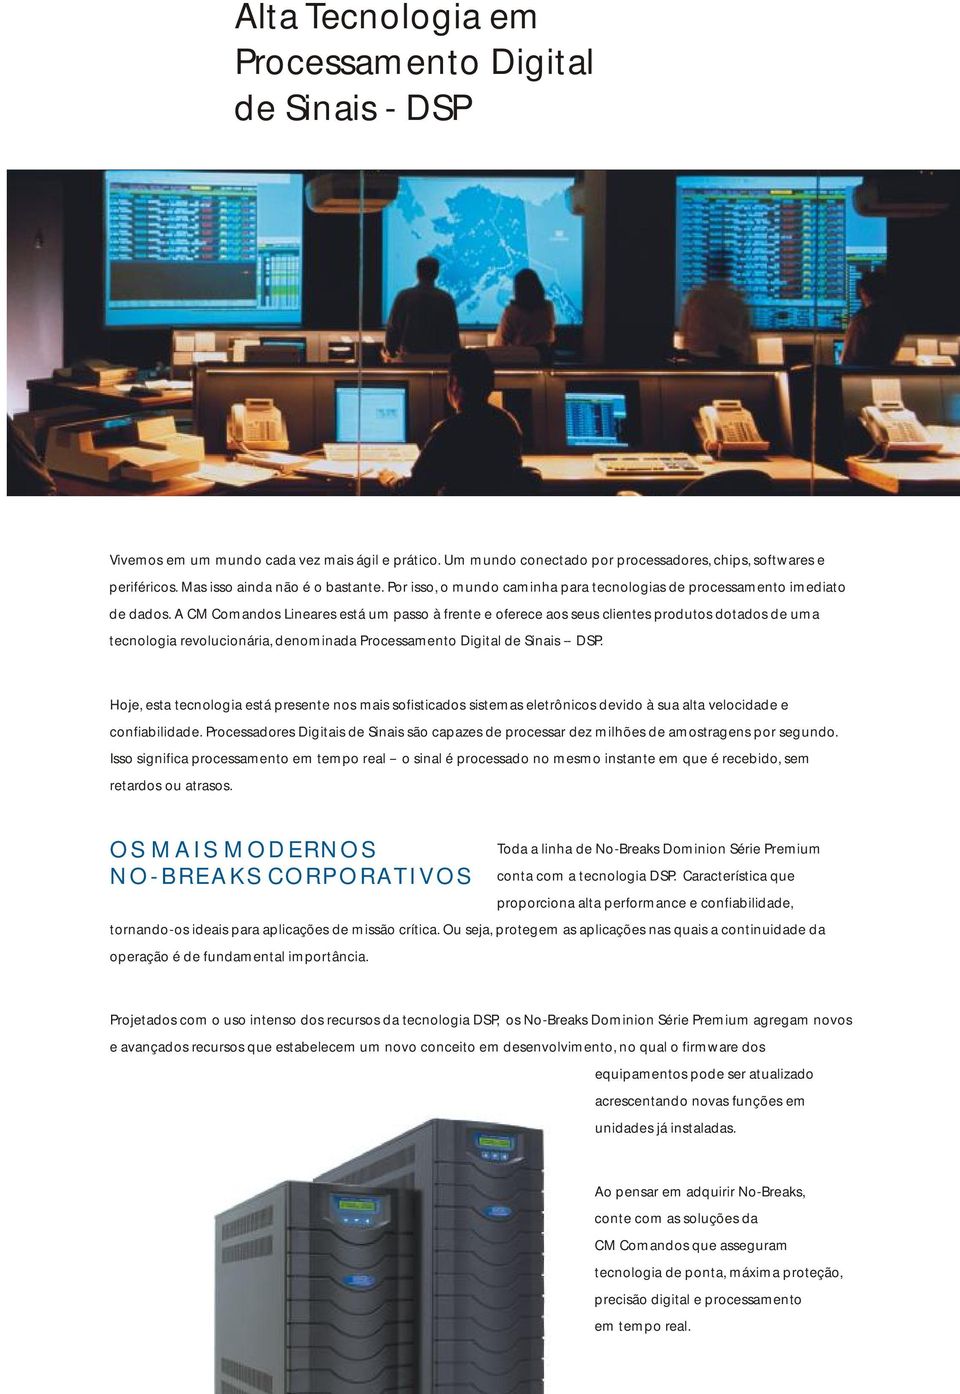 CM Comandos Lineares está um passo à frente e oferece aos seus clientes produtos dotados de uma tecnologia revolucionária, denominada Processamento Digital de Sinais -- DSP.